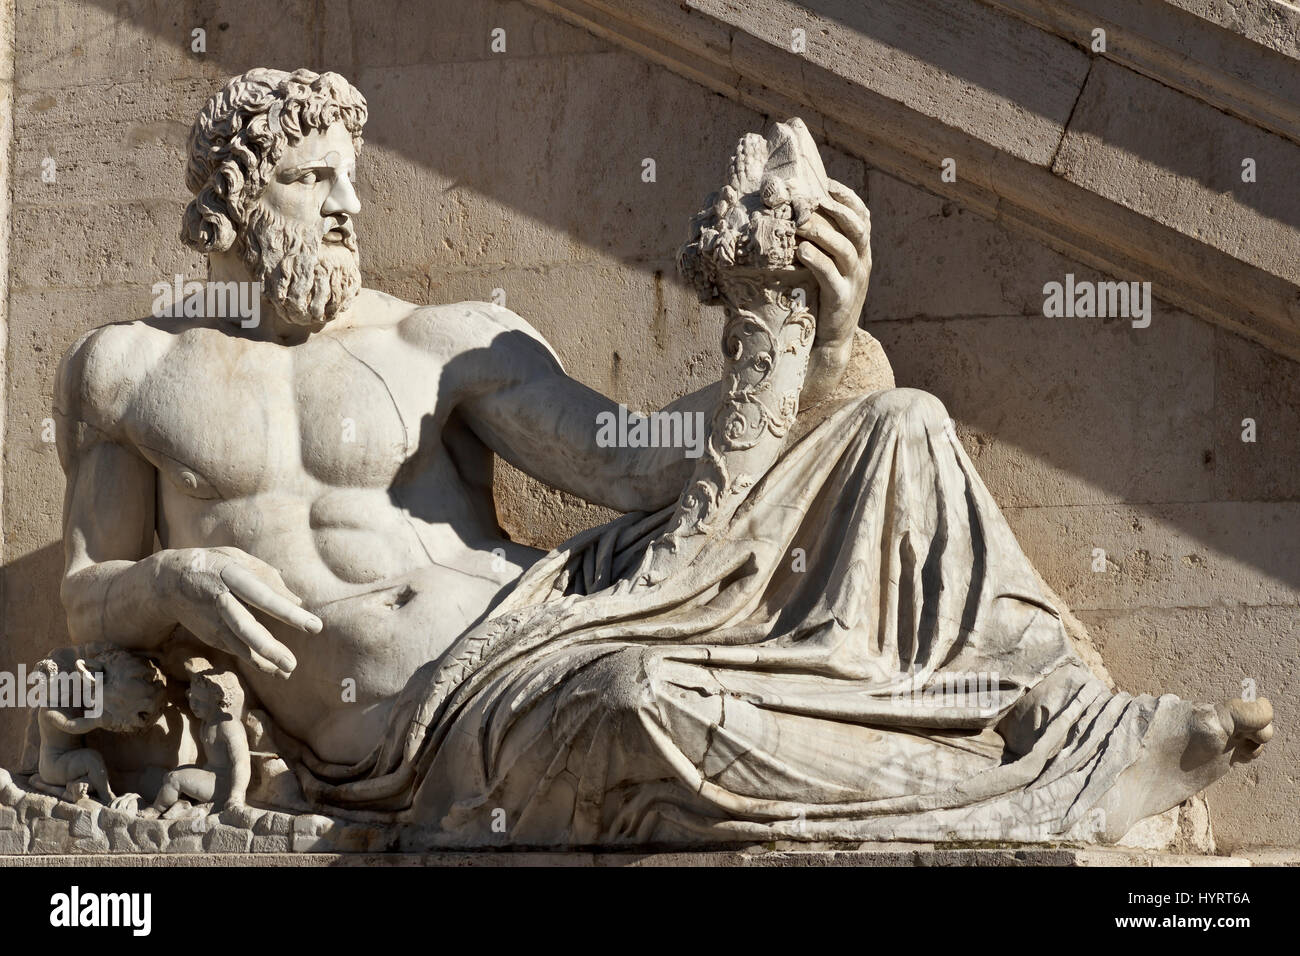 Statue Piazza Venezia - Roma, Italia Stock Photo